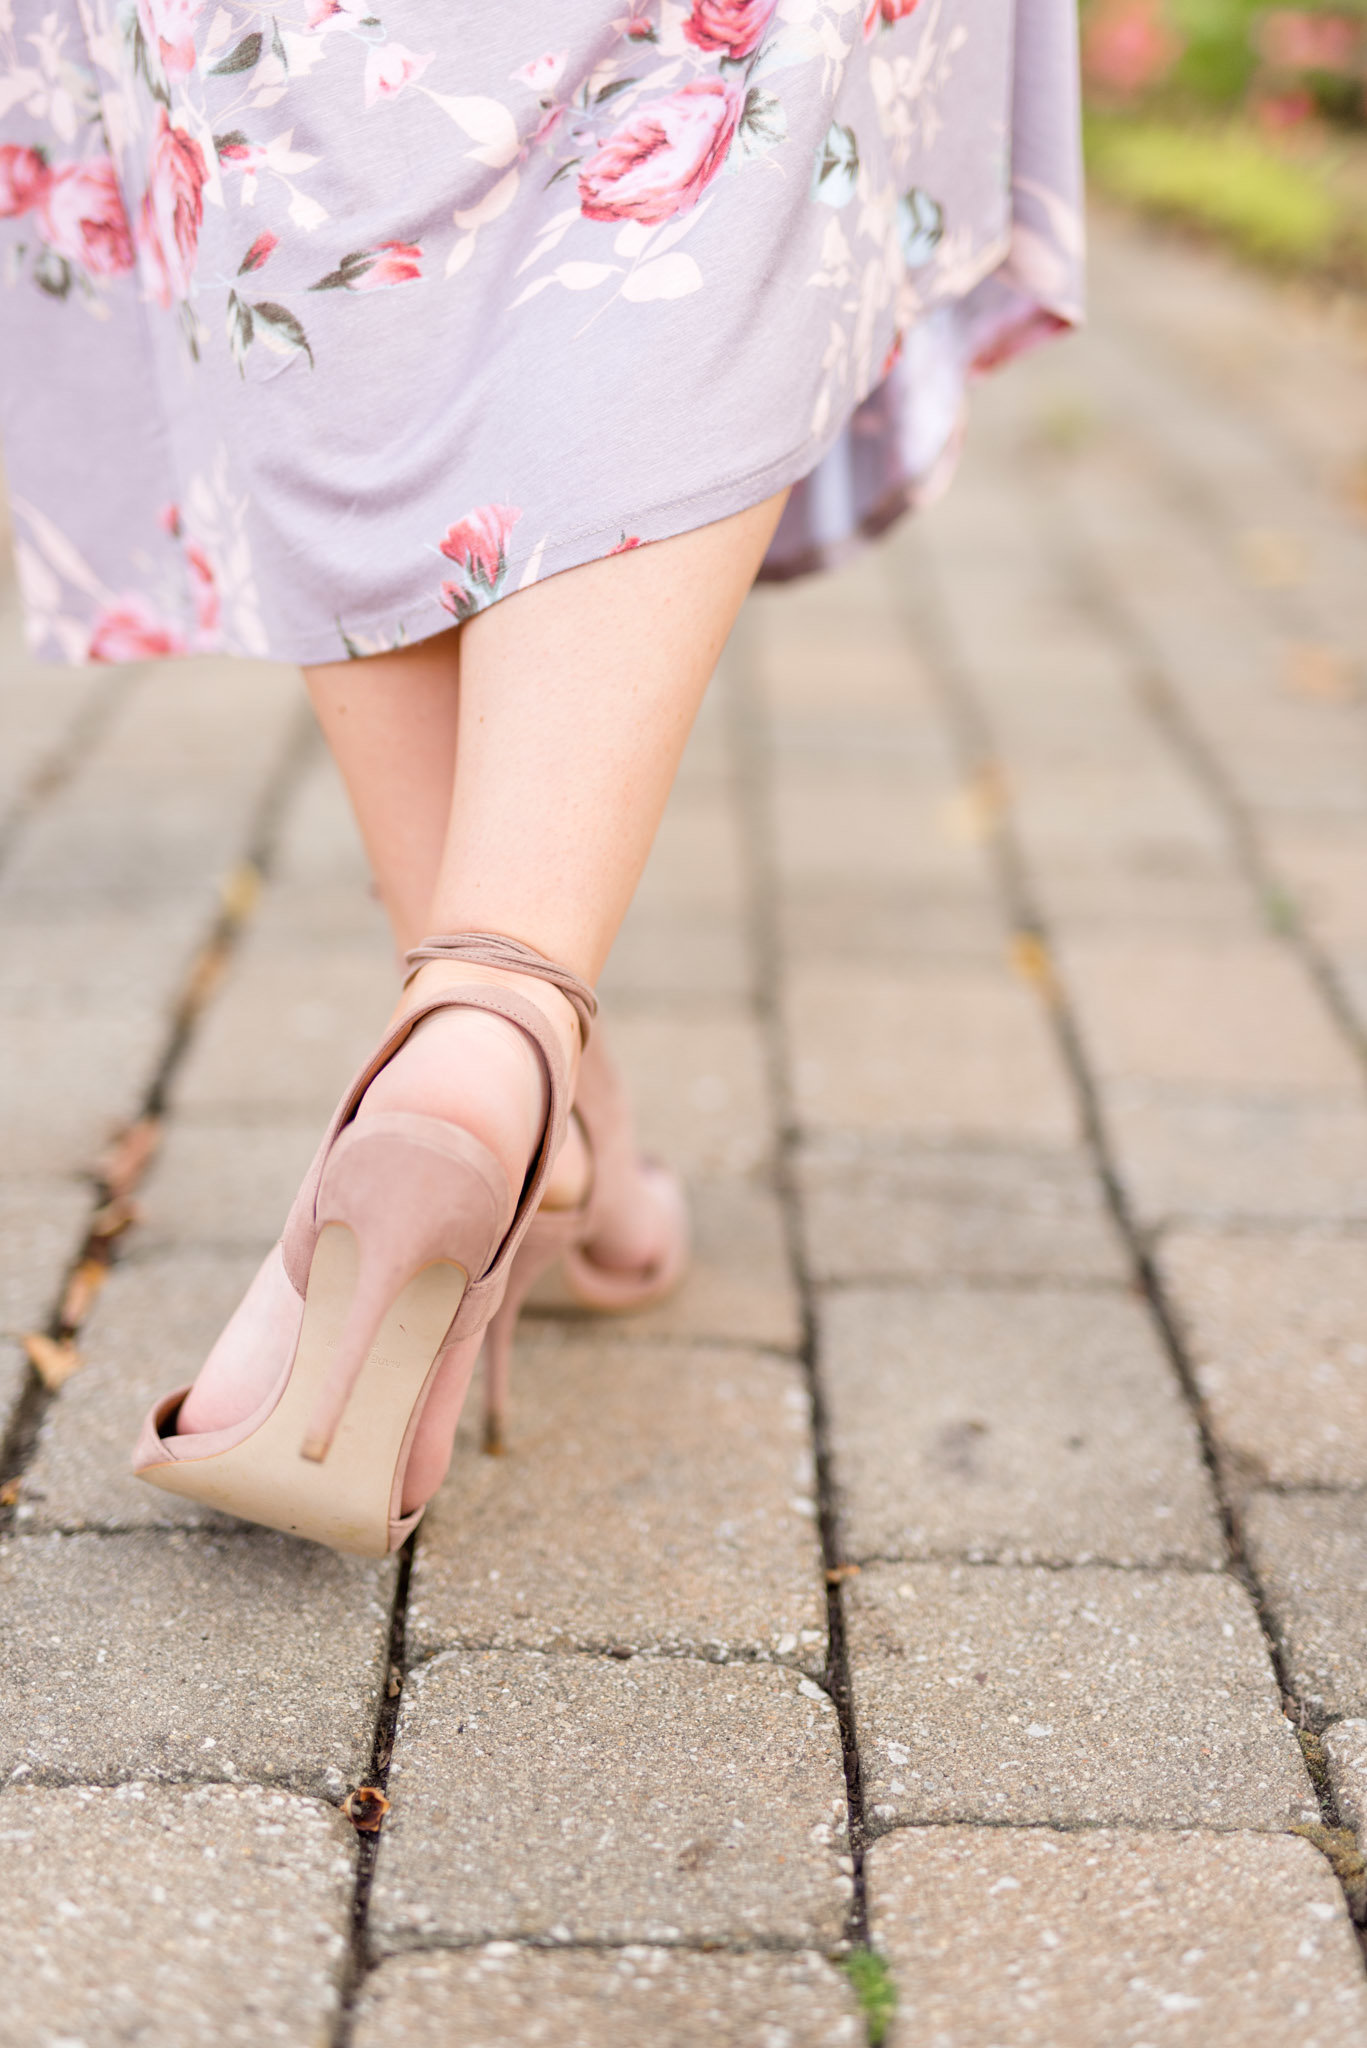 Heels as girl walks.